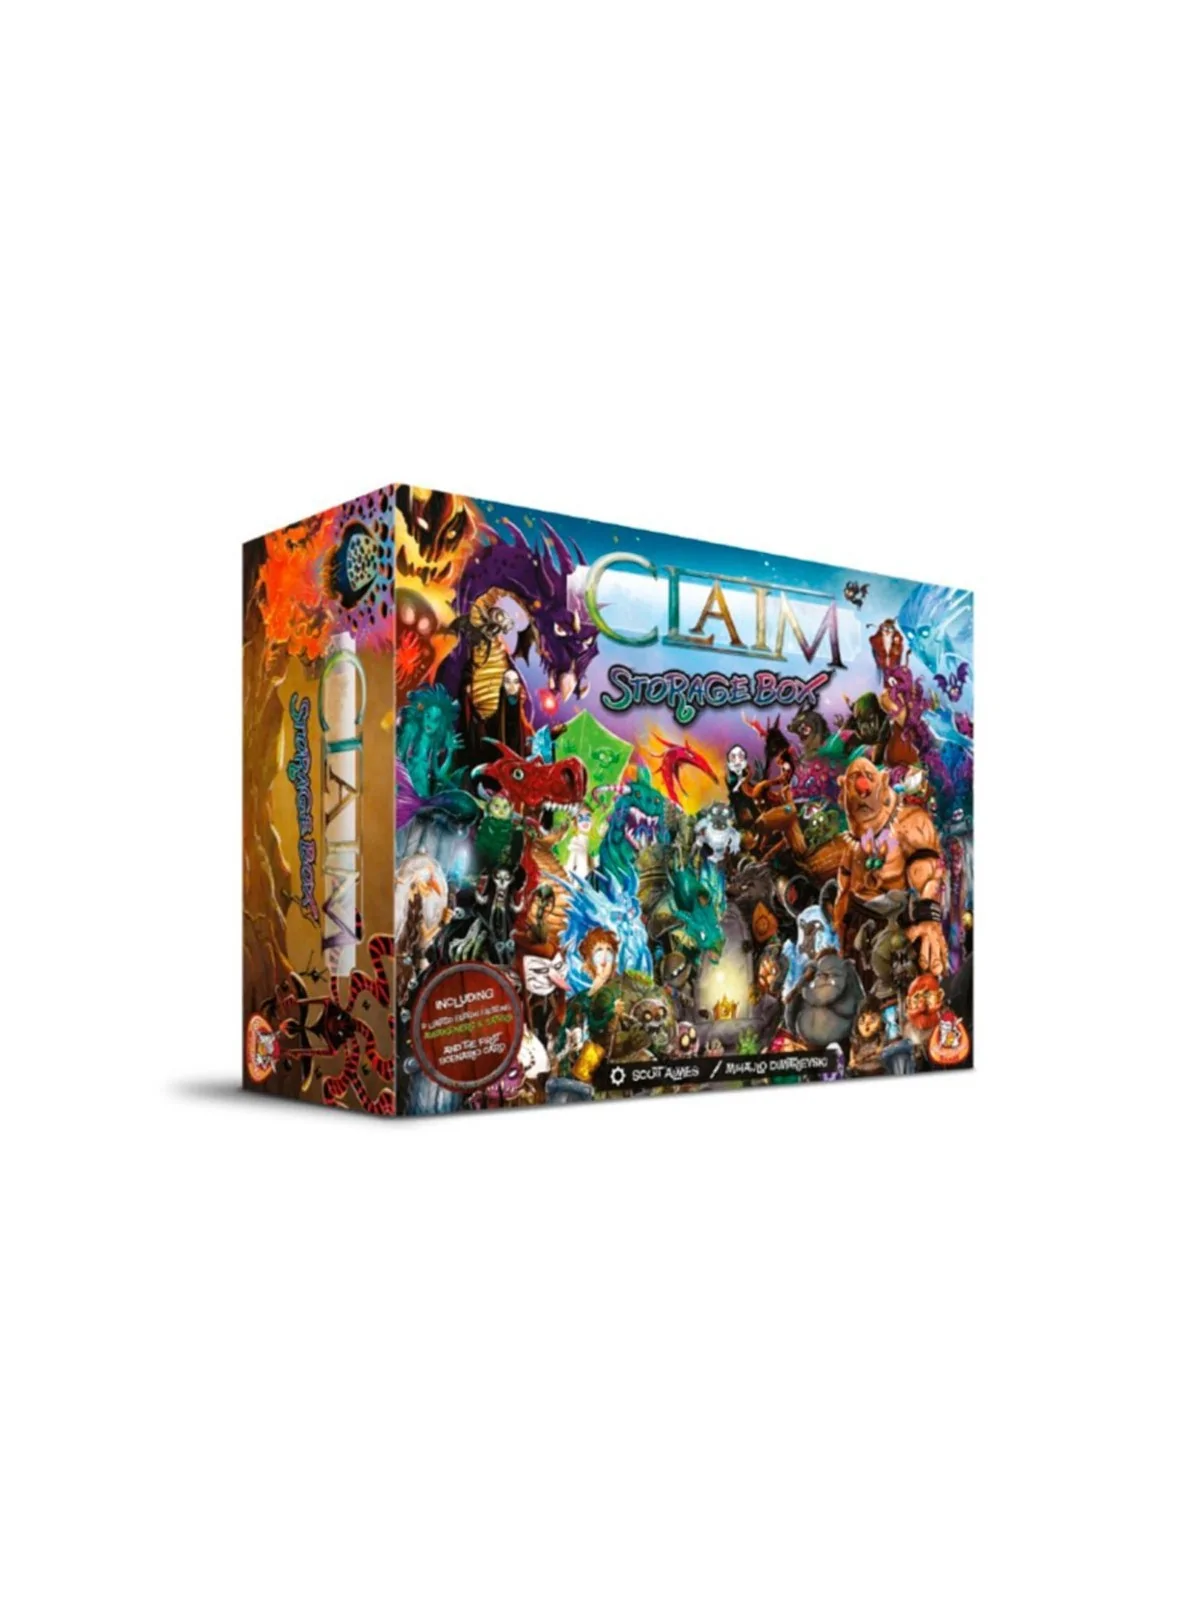 Comprar Claim Storage Box barato al mejor precio 28,45 € de SD GAMES